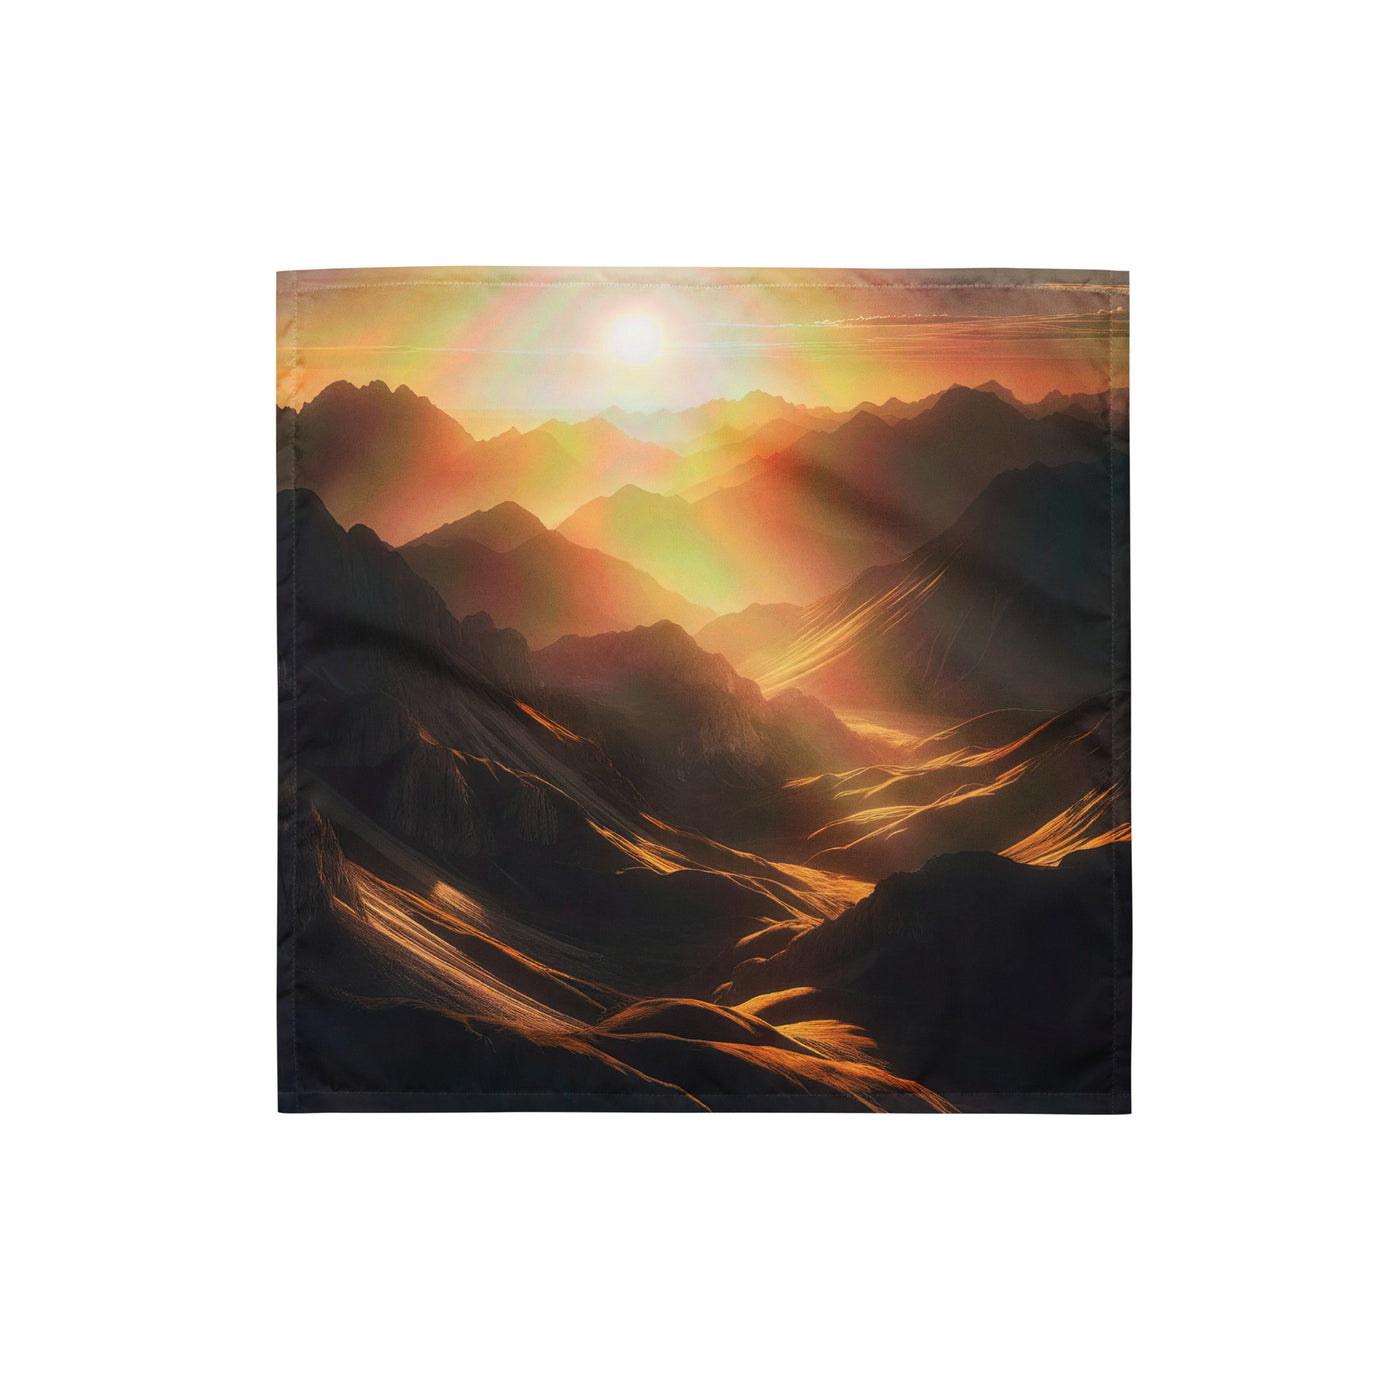 Foto der goldenen Stunde in den Bergen mit warmem Schein über zerklüftetem Gelände - Bandana (All-Over Print) berge xxx yyy zzz S